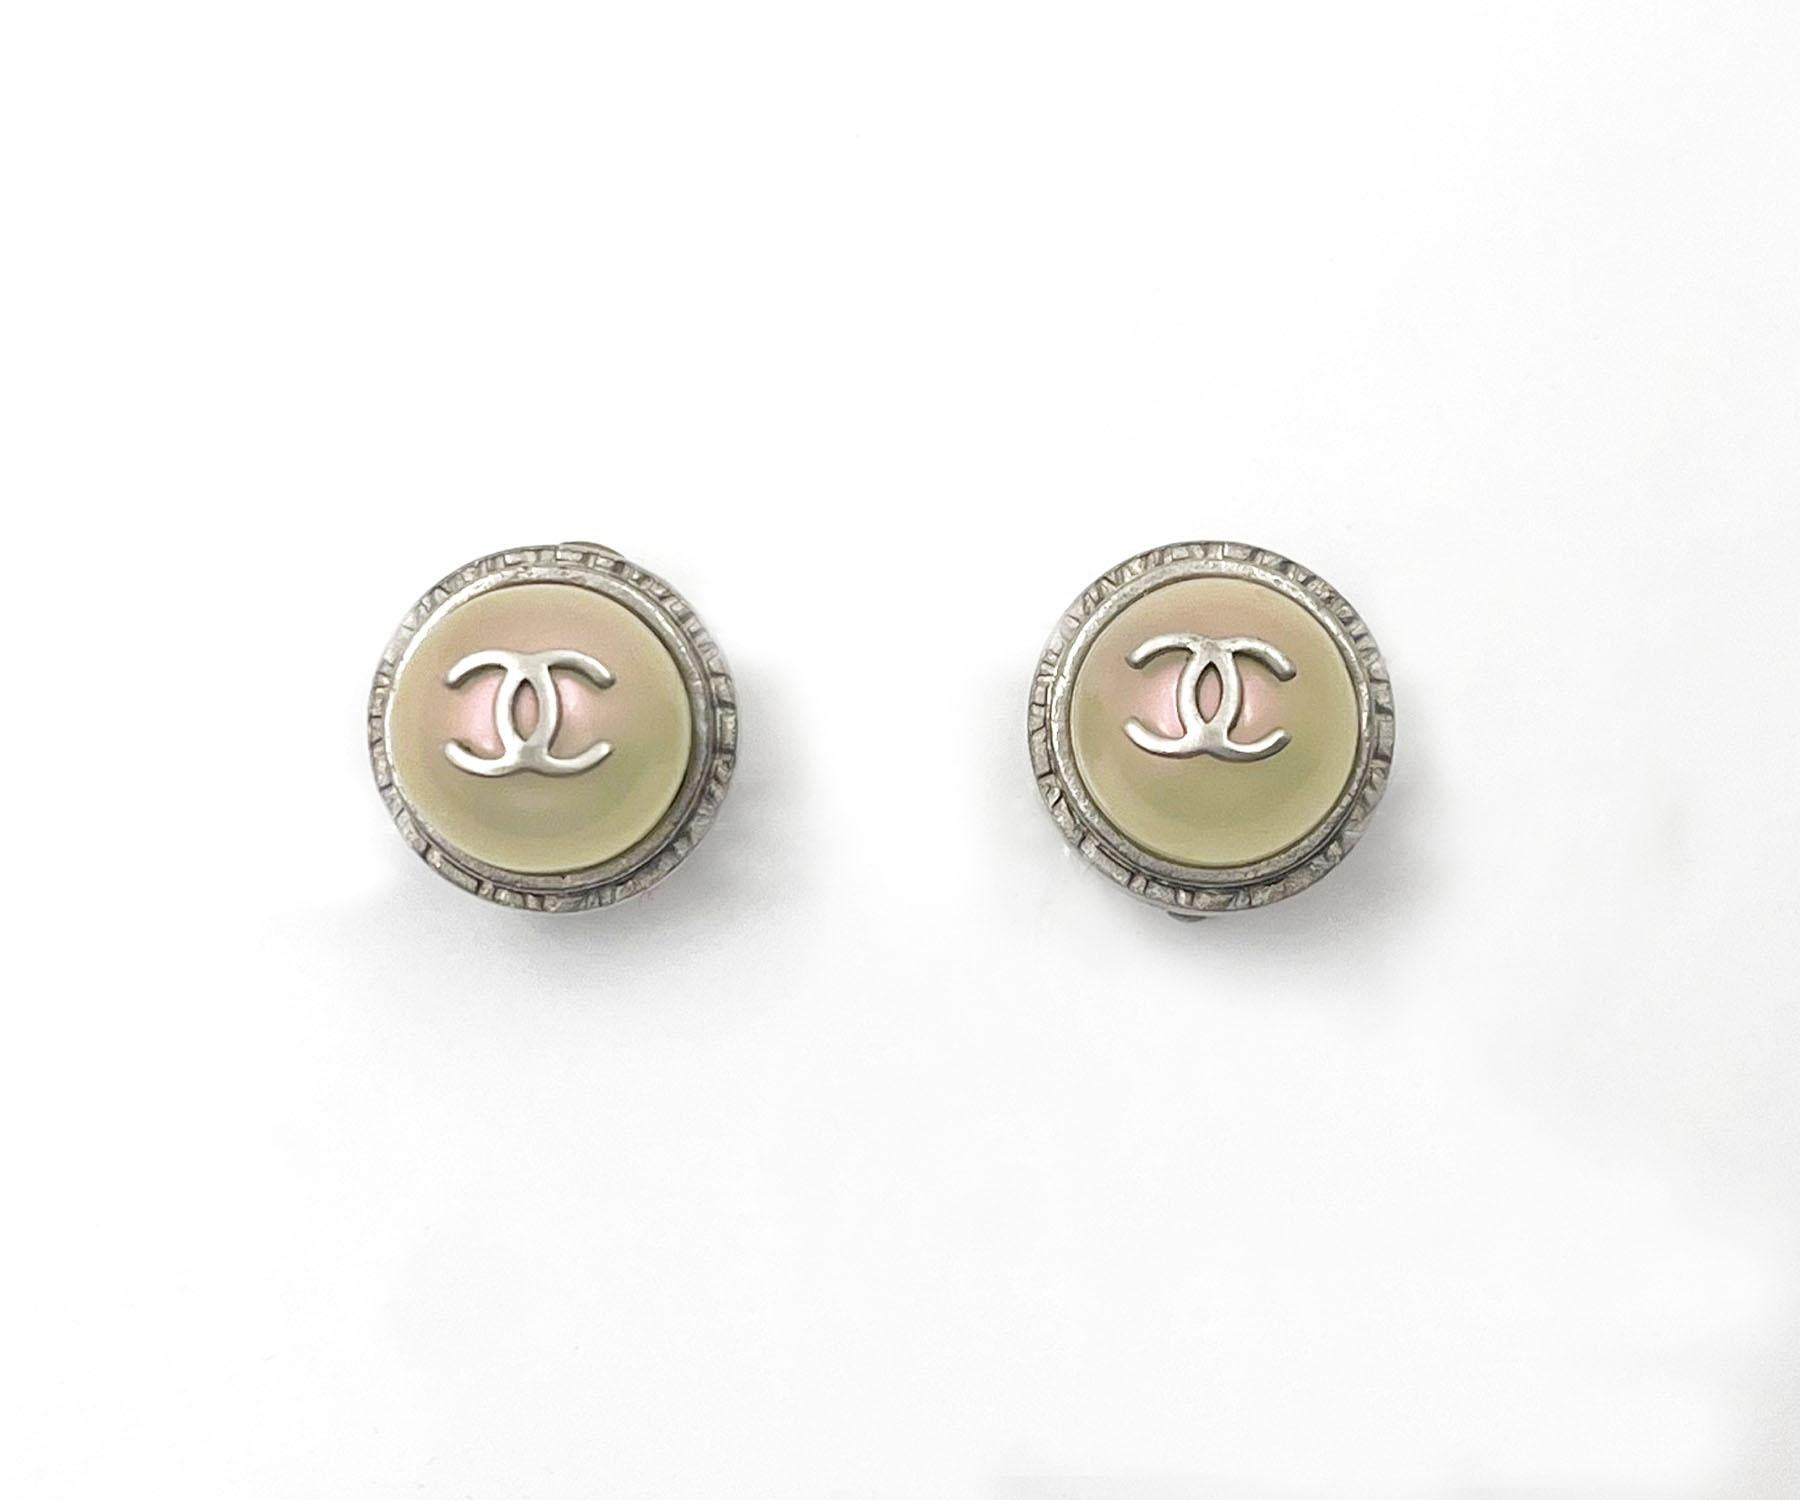 Chanel Silber CC schillernde Perle Gumball-Ohrclips auf Ohrringe 
 
*Markierung 98
*Hergestellt in Frankreich
*Kommt mit dem Originalkarton

-Es ist ungefähr 0,55